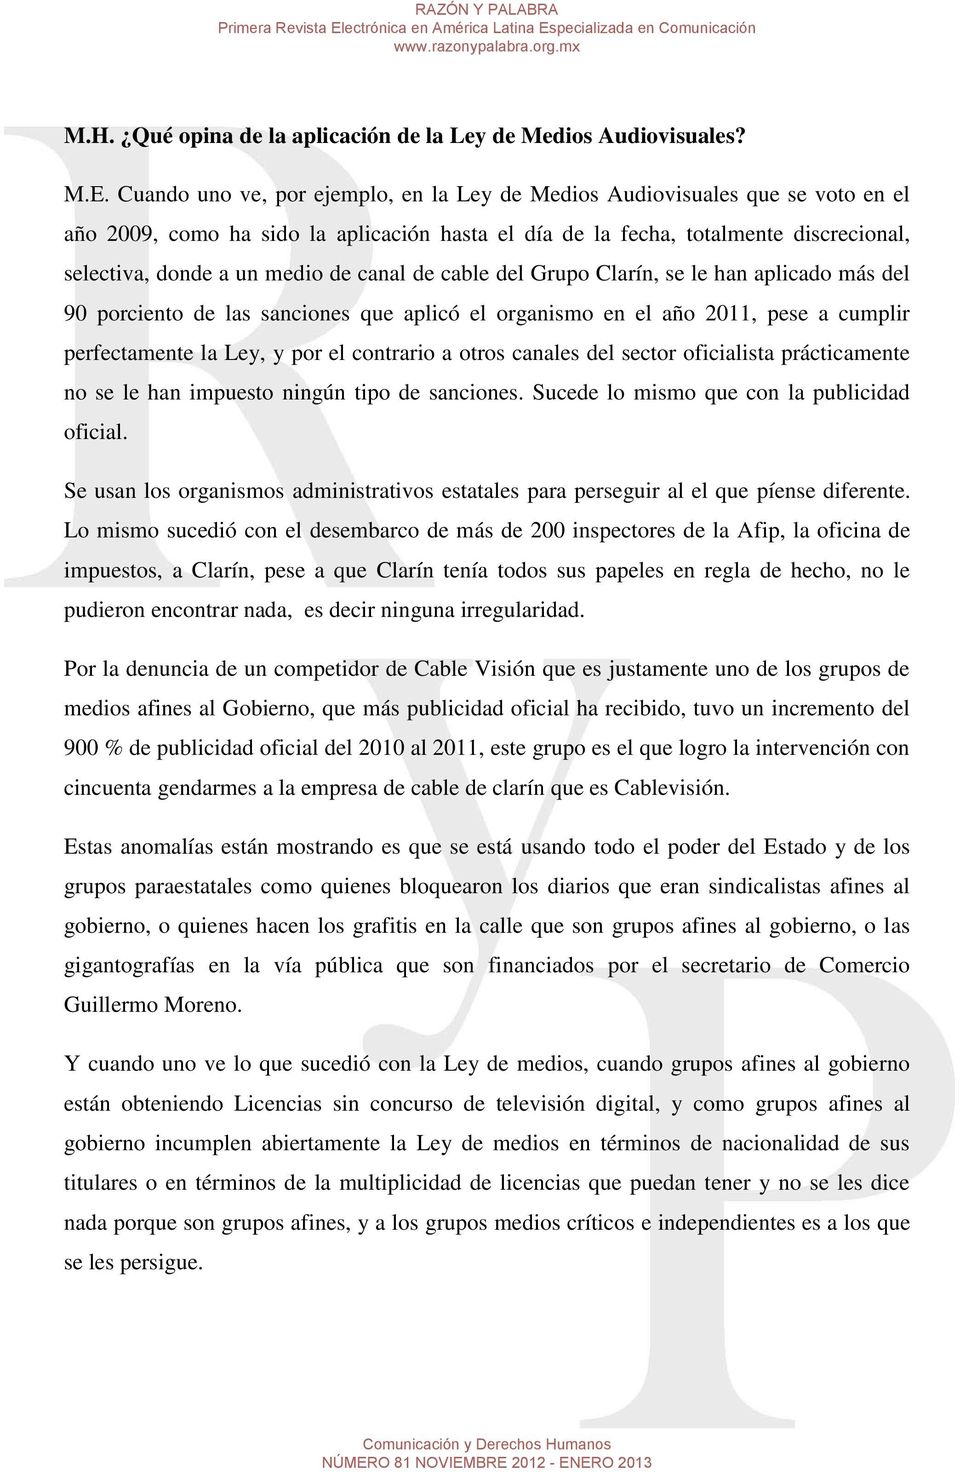 canal de cable del Grupo Clarín, se le han aplicado más del 90 porciento de las sanciones que aplicó el organismo en el año 2011, pese a cumplir perfectamente la Ley, y por el contrario a otros